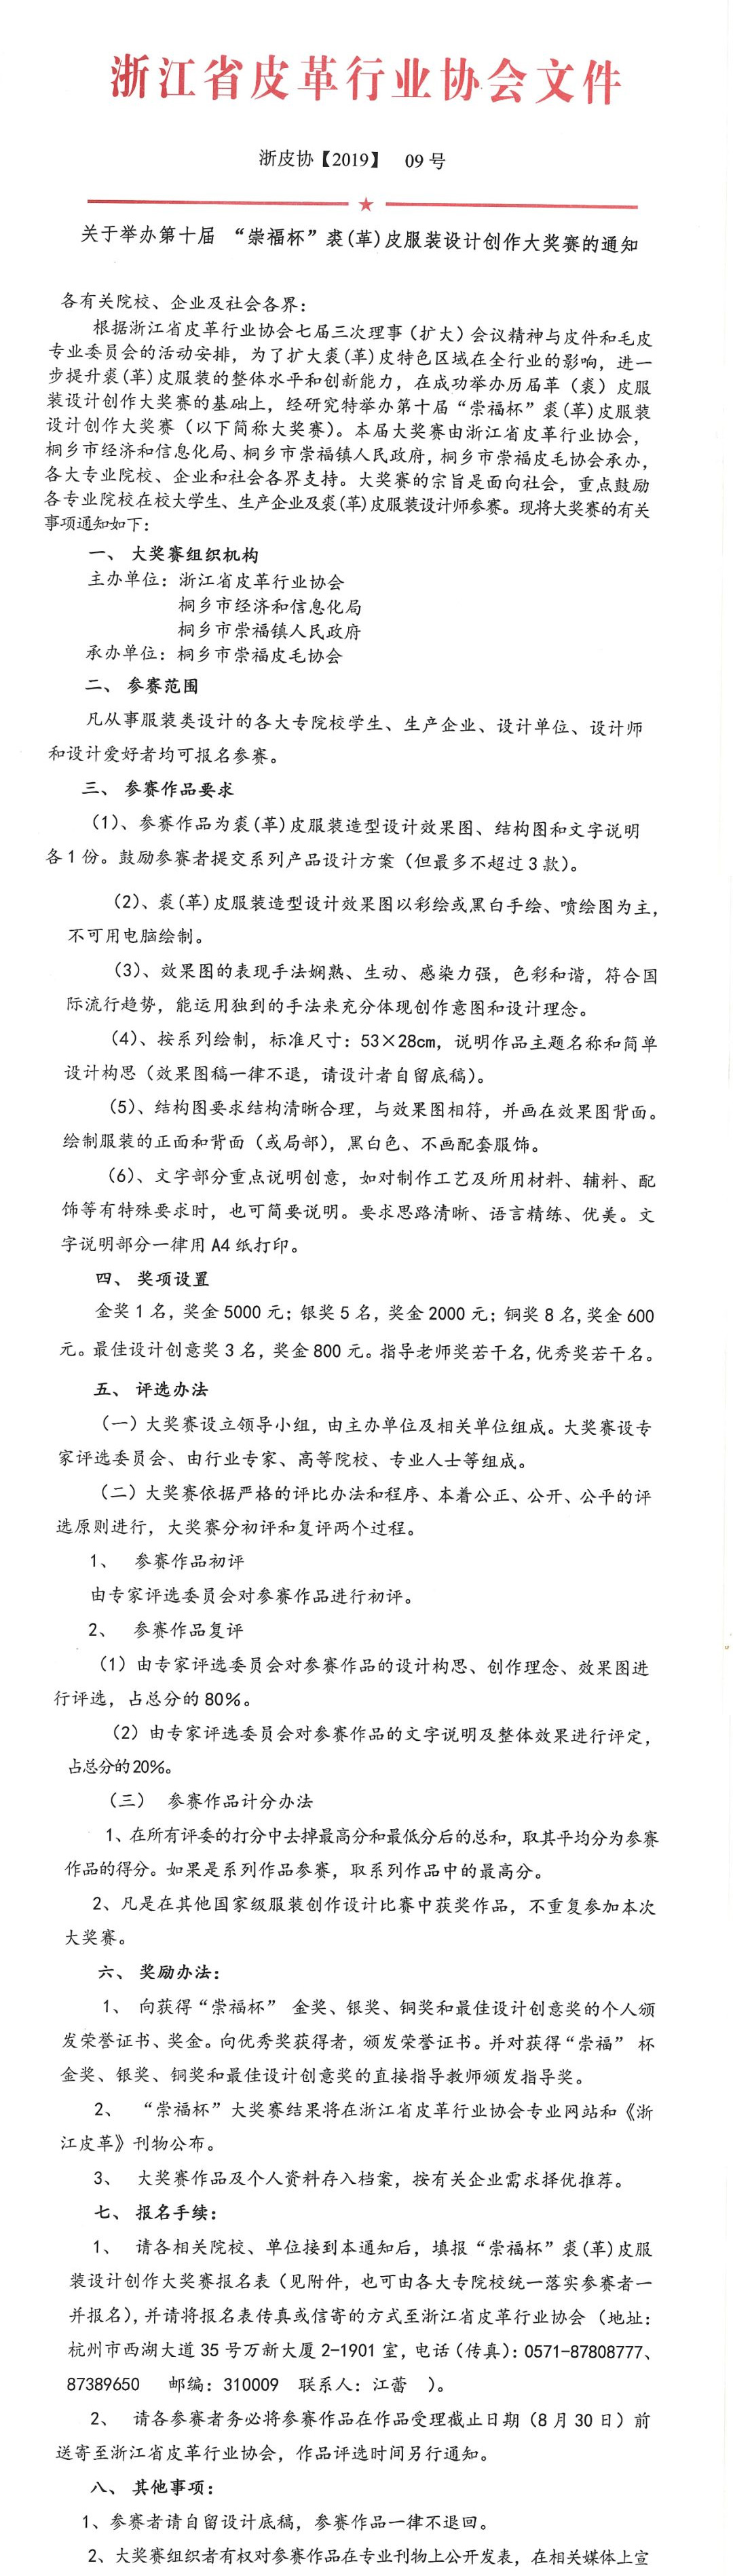 「崇福杯」中國國際裘皮服裝設計大賽 通知文件